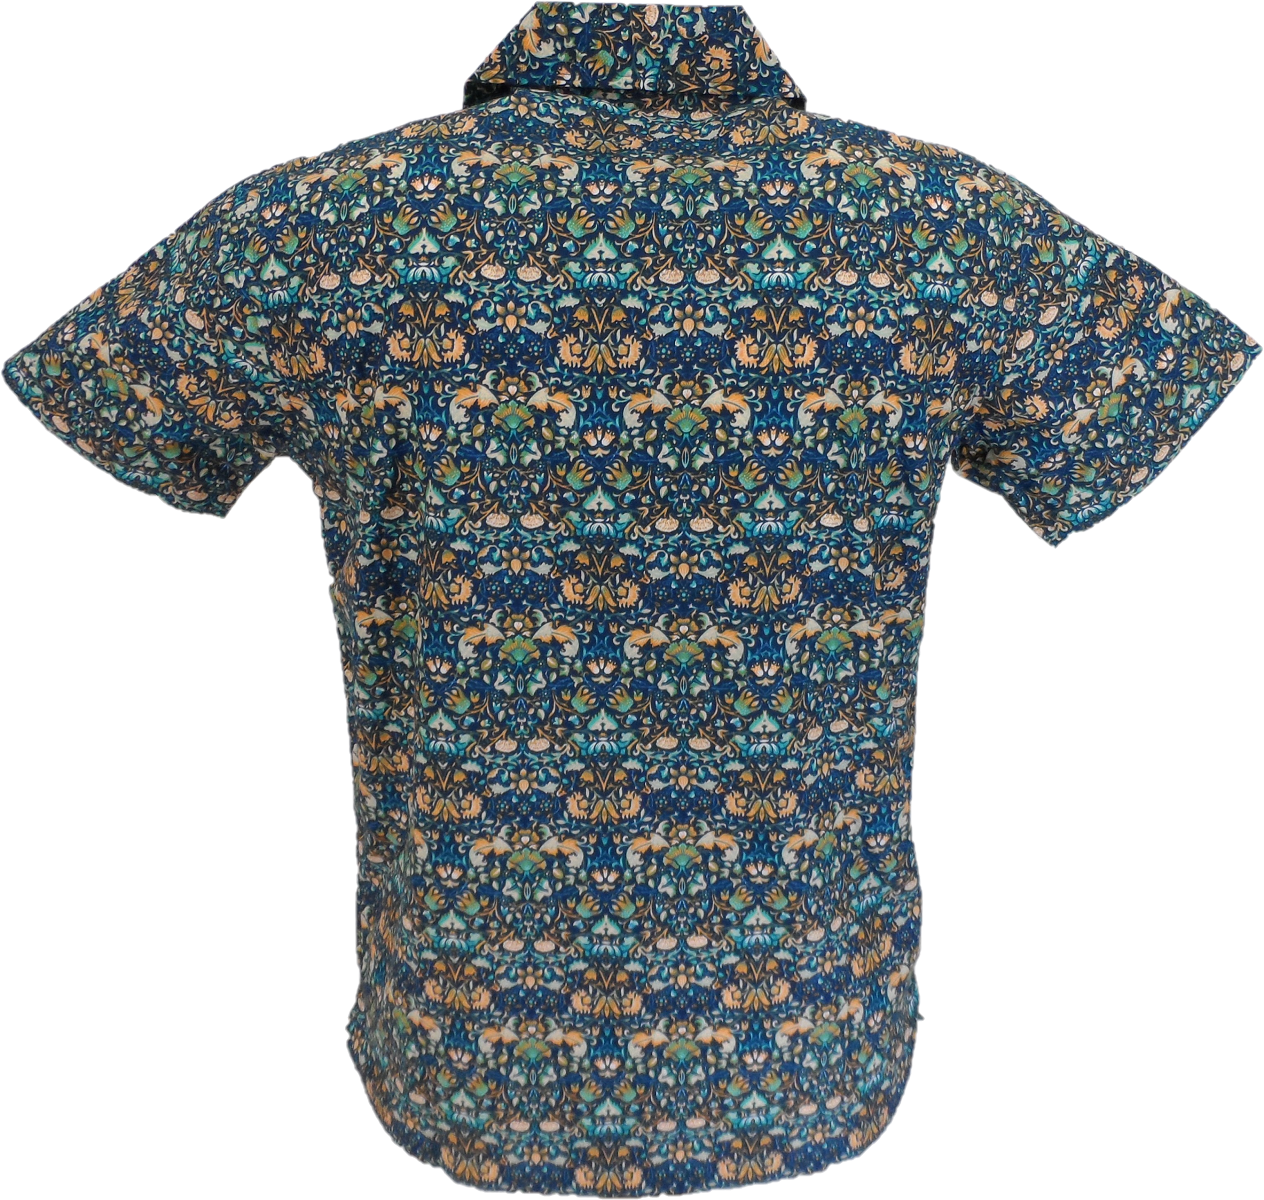 قميص Relco رجالي أزرق متعدد البيزلي ريترو هاواي